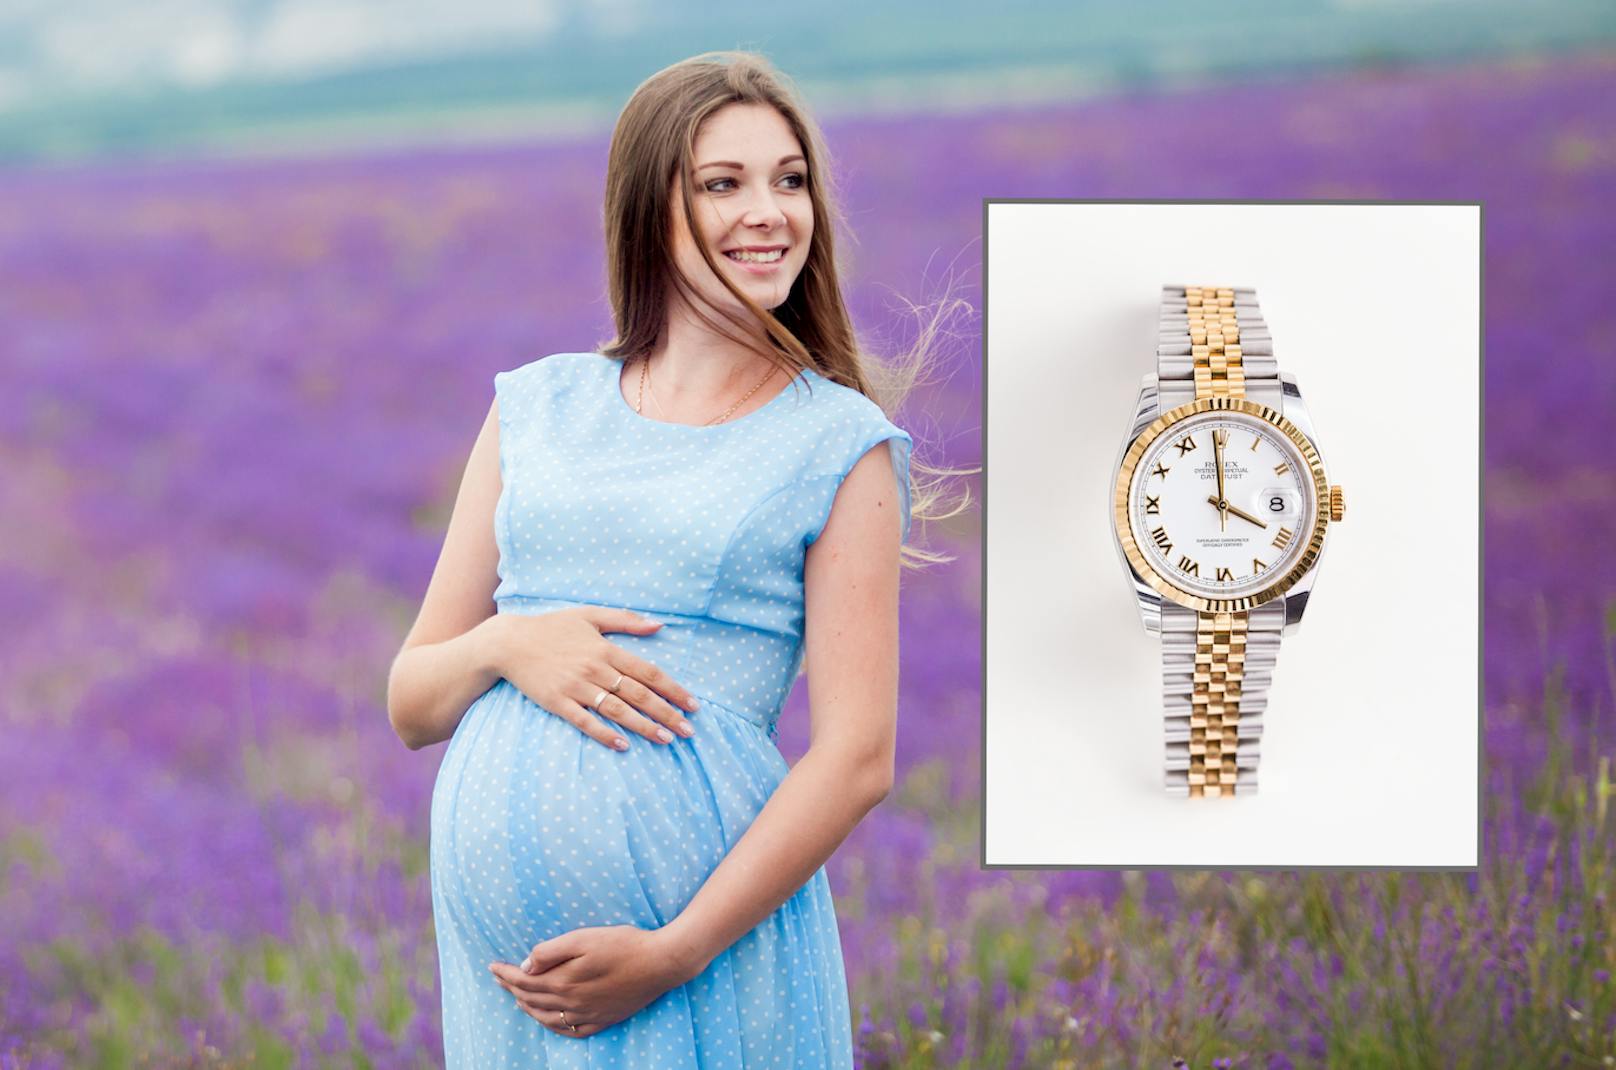 Schwangere stahl 20.000-Euro-Uhr – nun wird sie gejagt